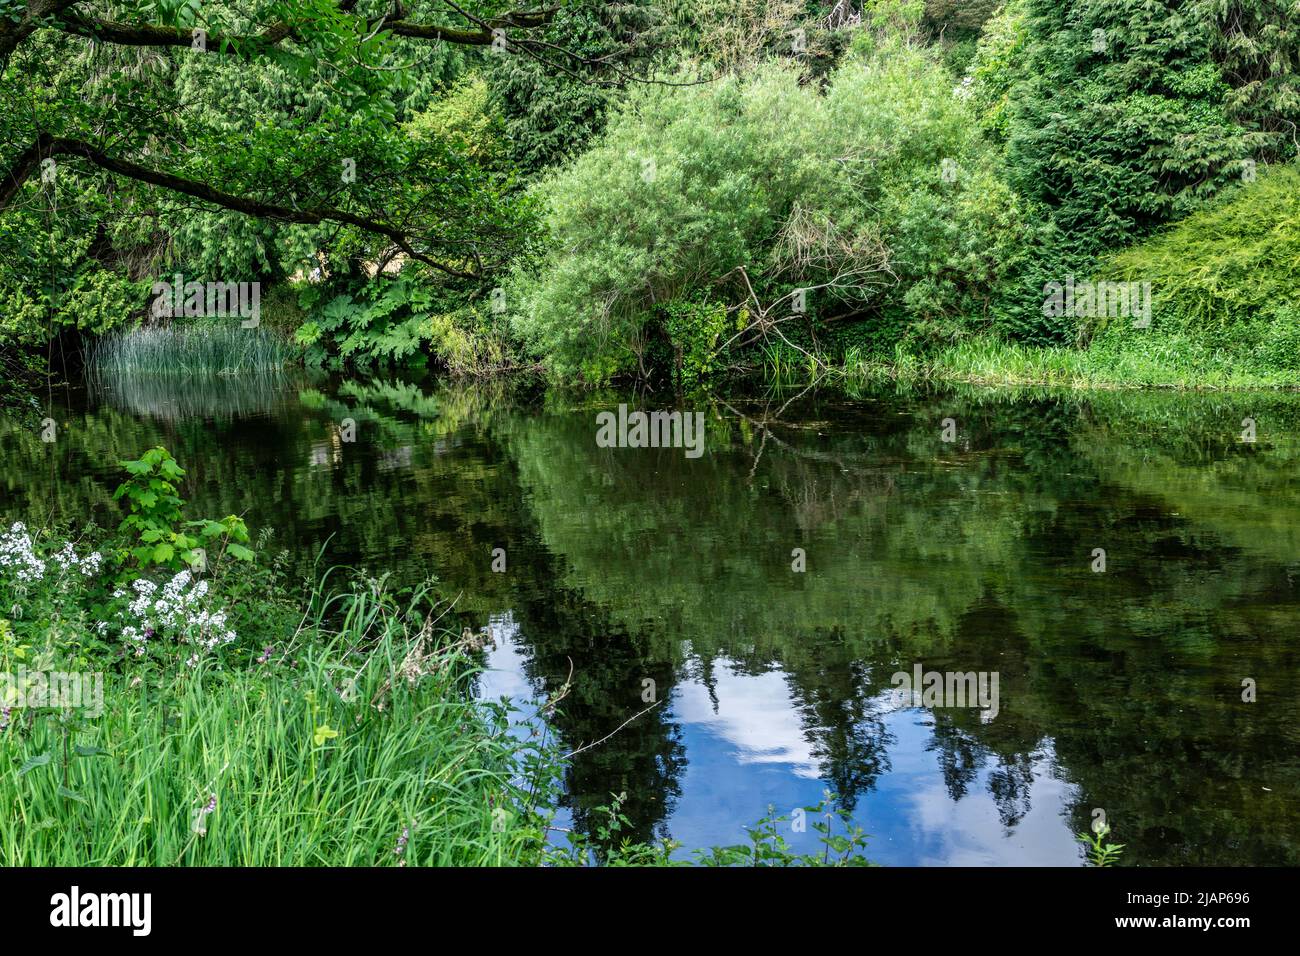 La végétation luxuriante et verte bordant la rivière Liffey près de Palmerstown à Dublin, en Irlande. Banque D'Images